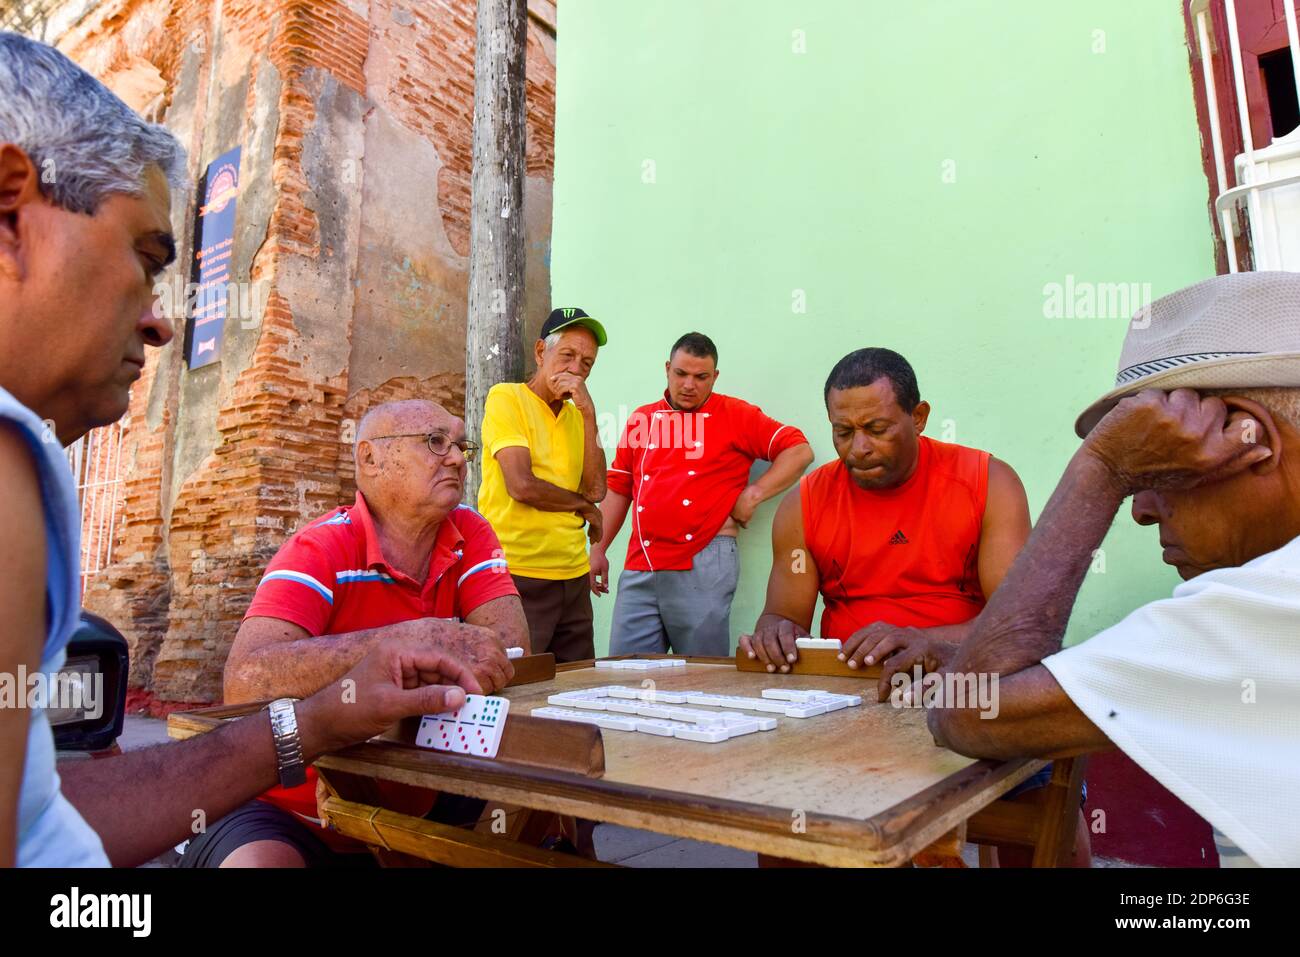 Uomini cubani che giocano in strada, Trinidad Cuba Foto Stock